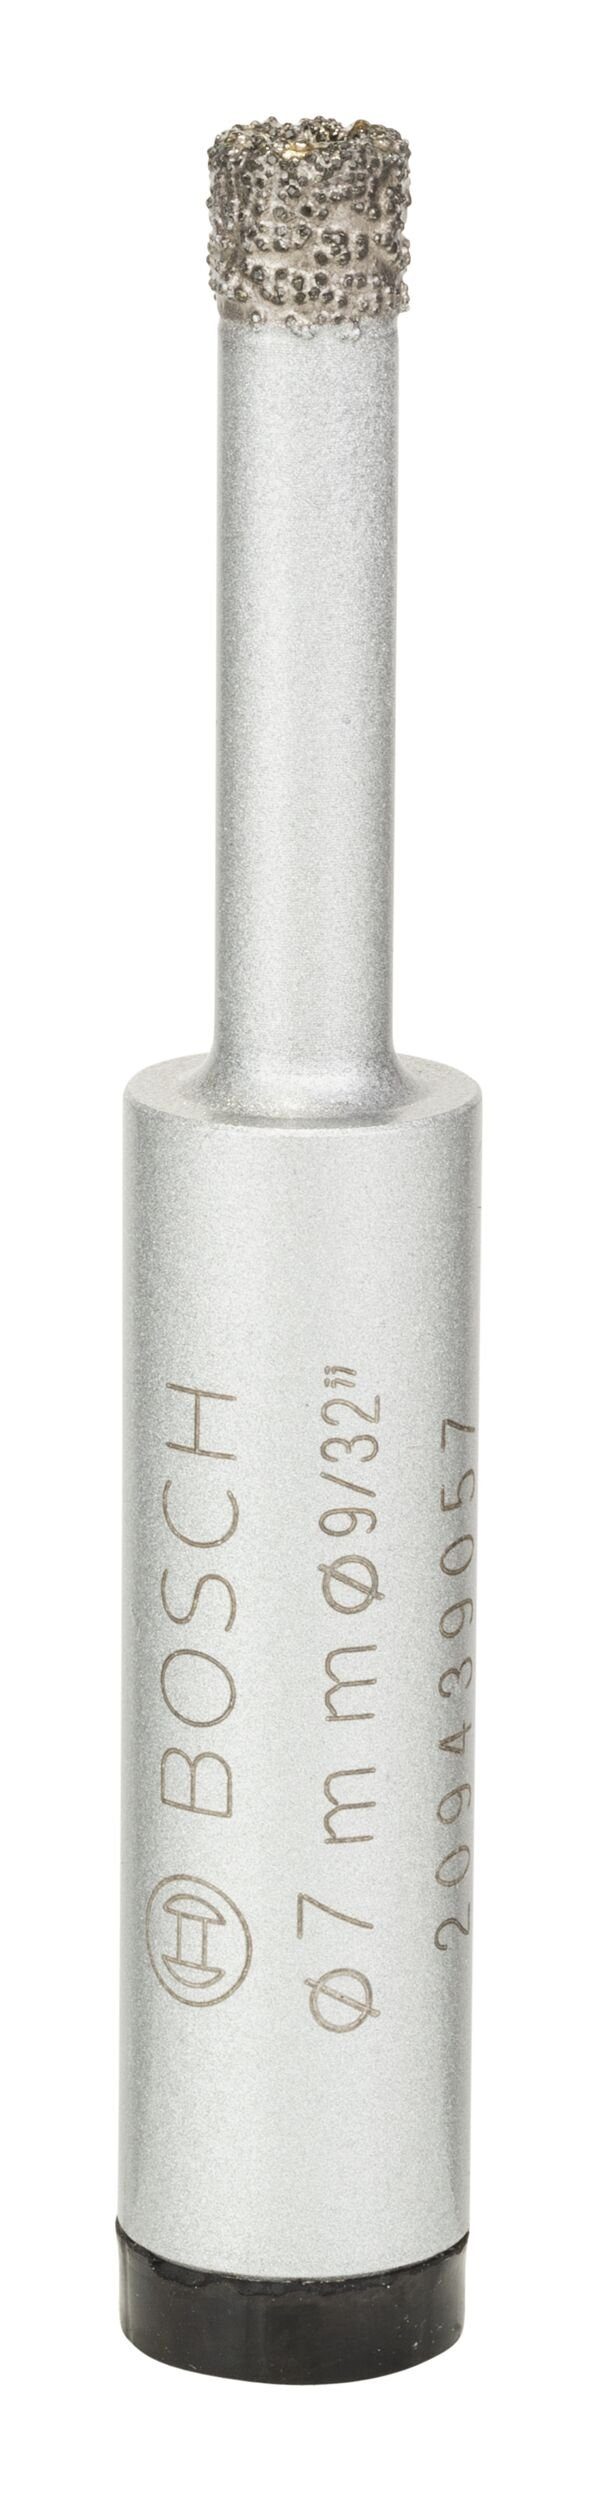 BOSCH Diamanttrockenbohrer, Ø 7 mm, Easy Dry Best for Ceramic - 7 x 33 mm